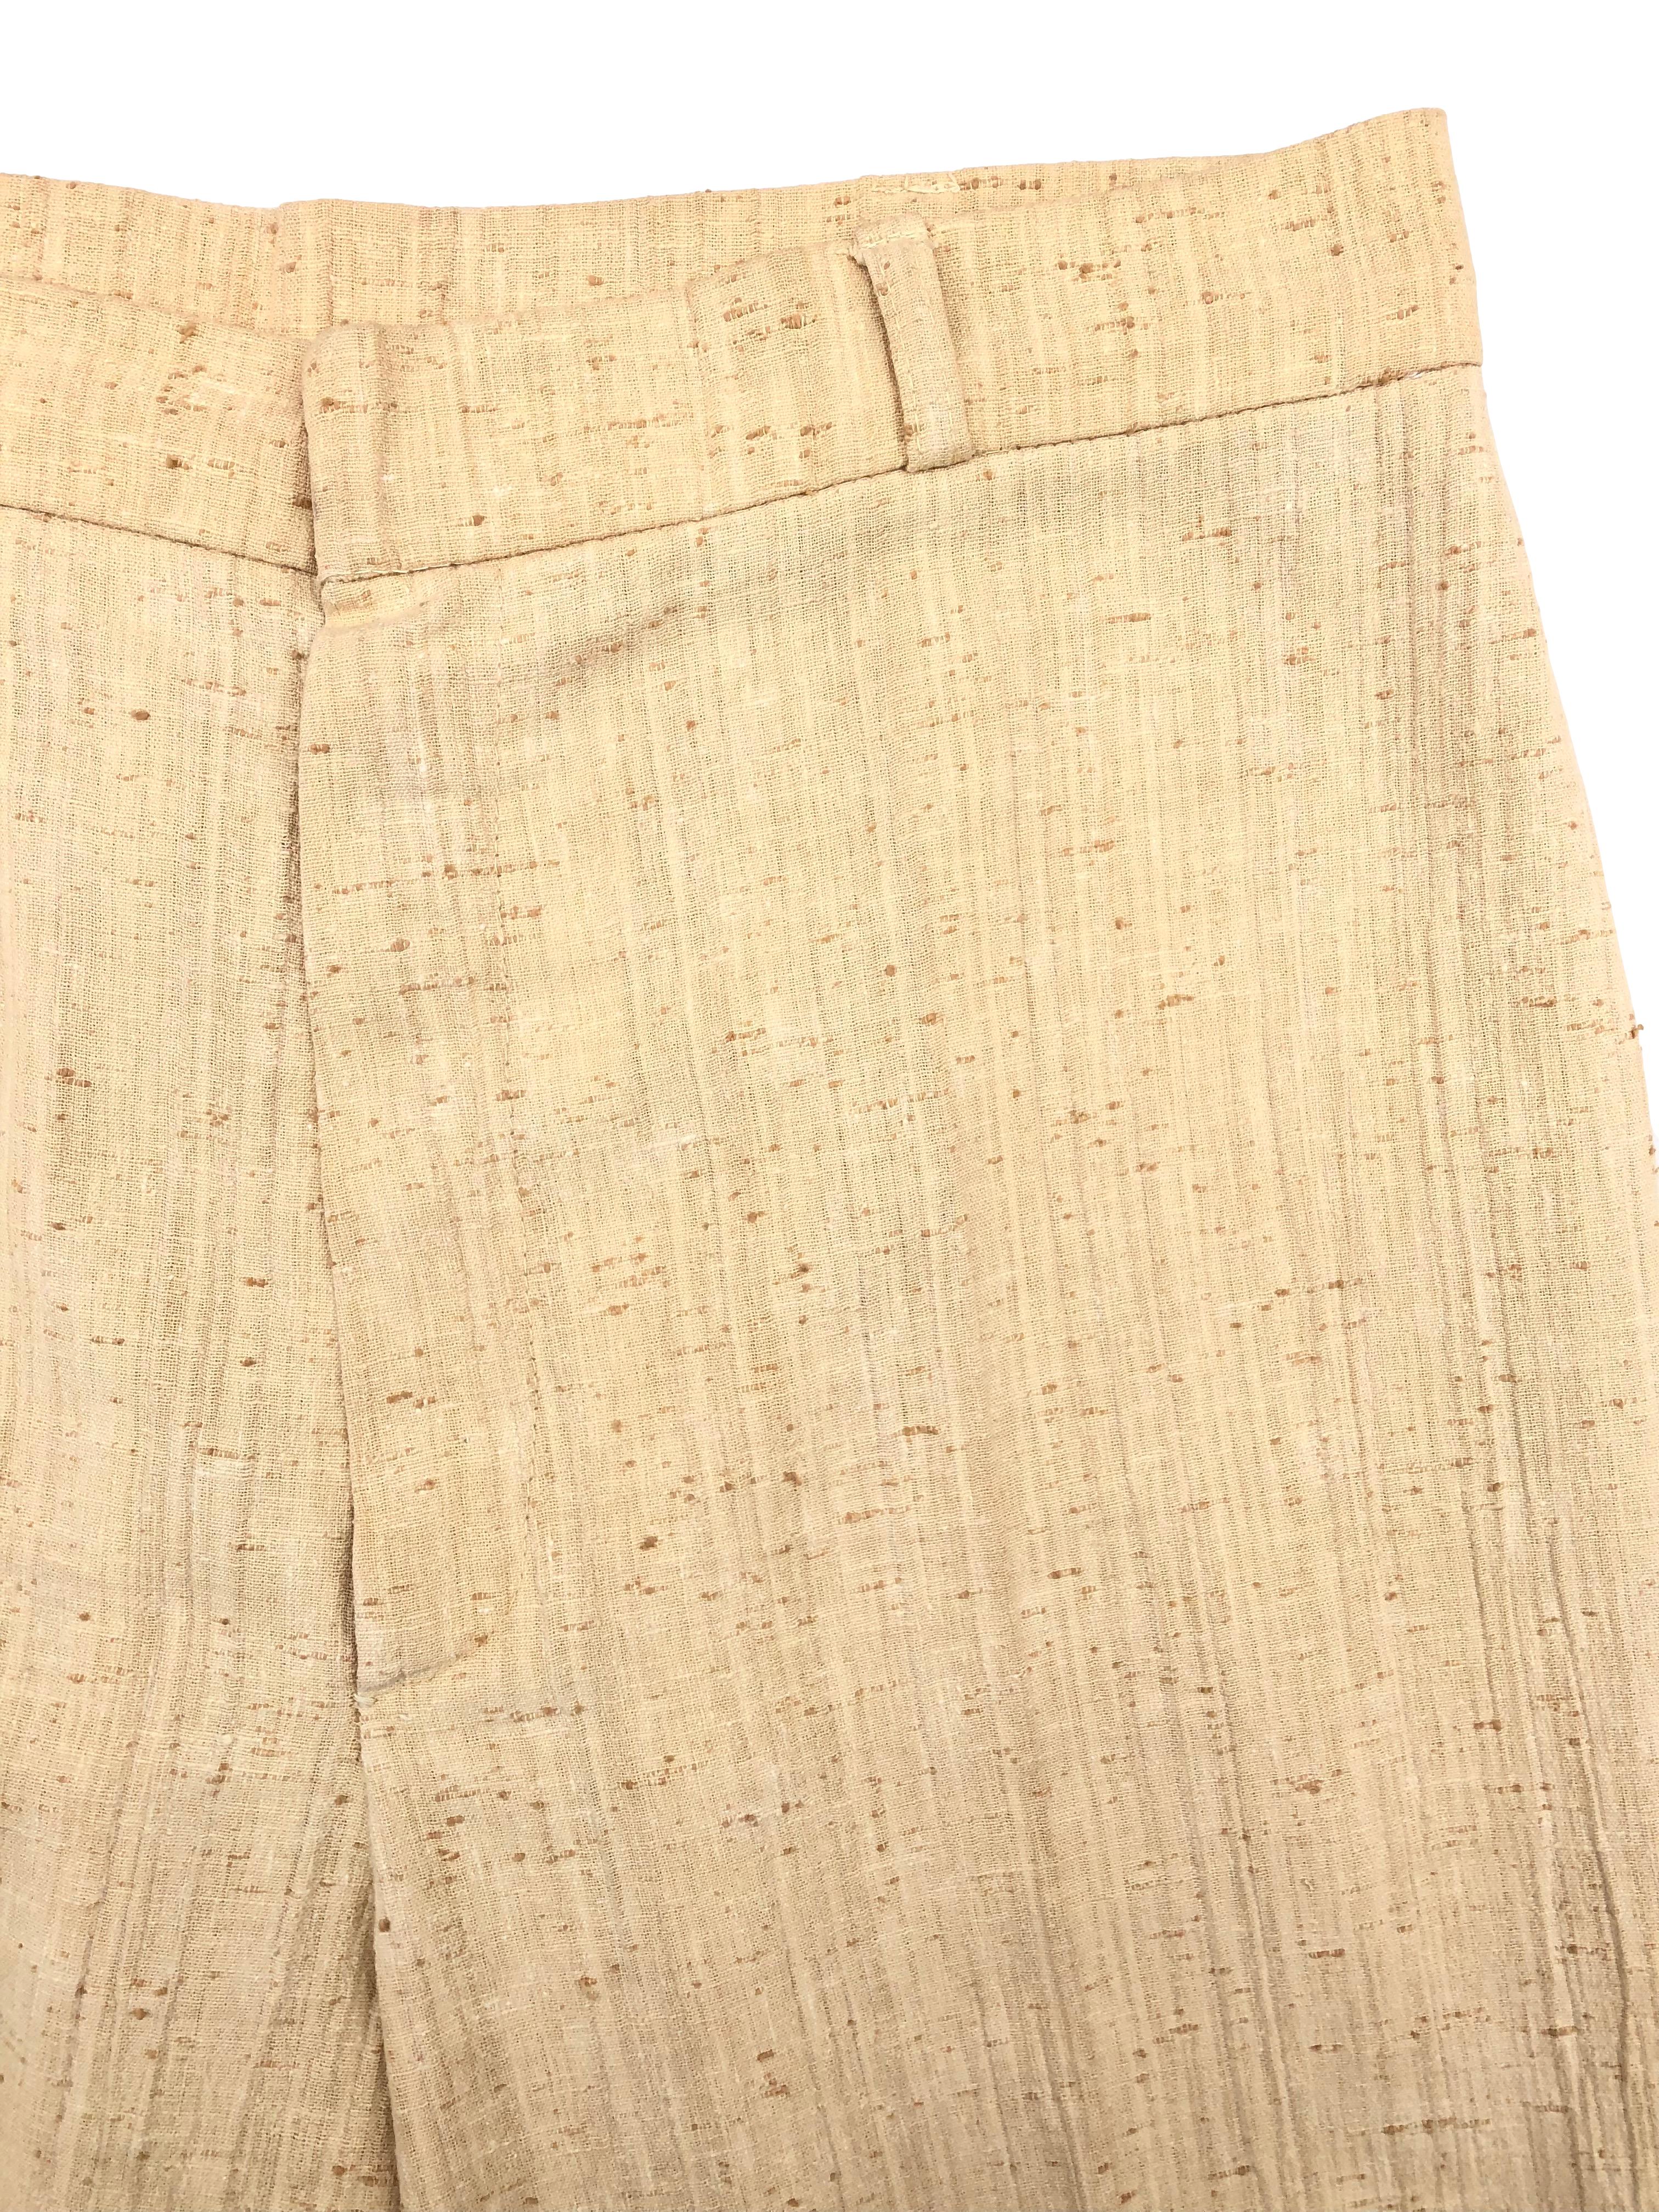 Pantalón vintage a la cintura, amarillo con textura rústica, corte recto. Cintura 75cm Tiro 33cm Largo 98cm